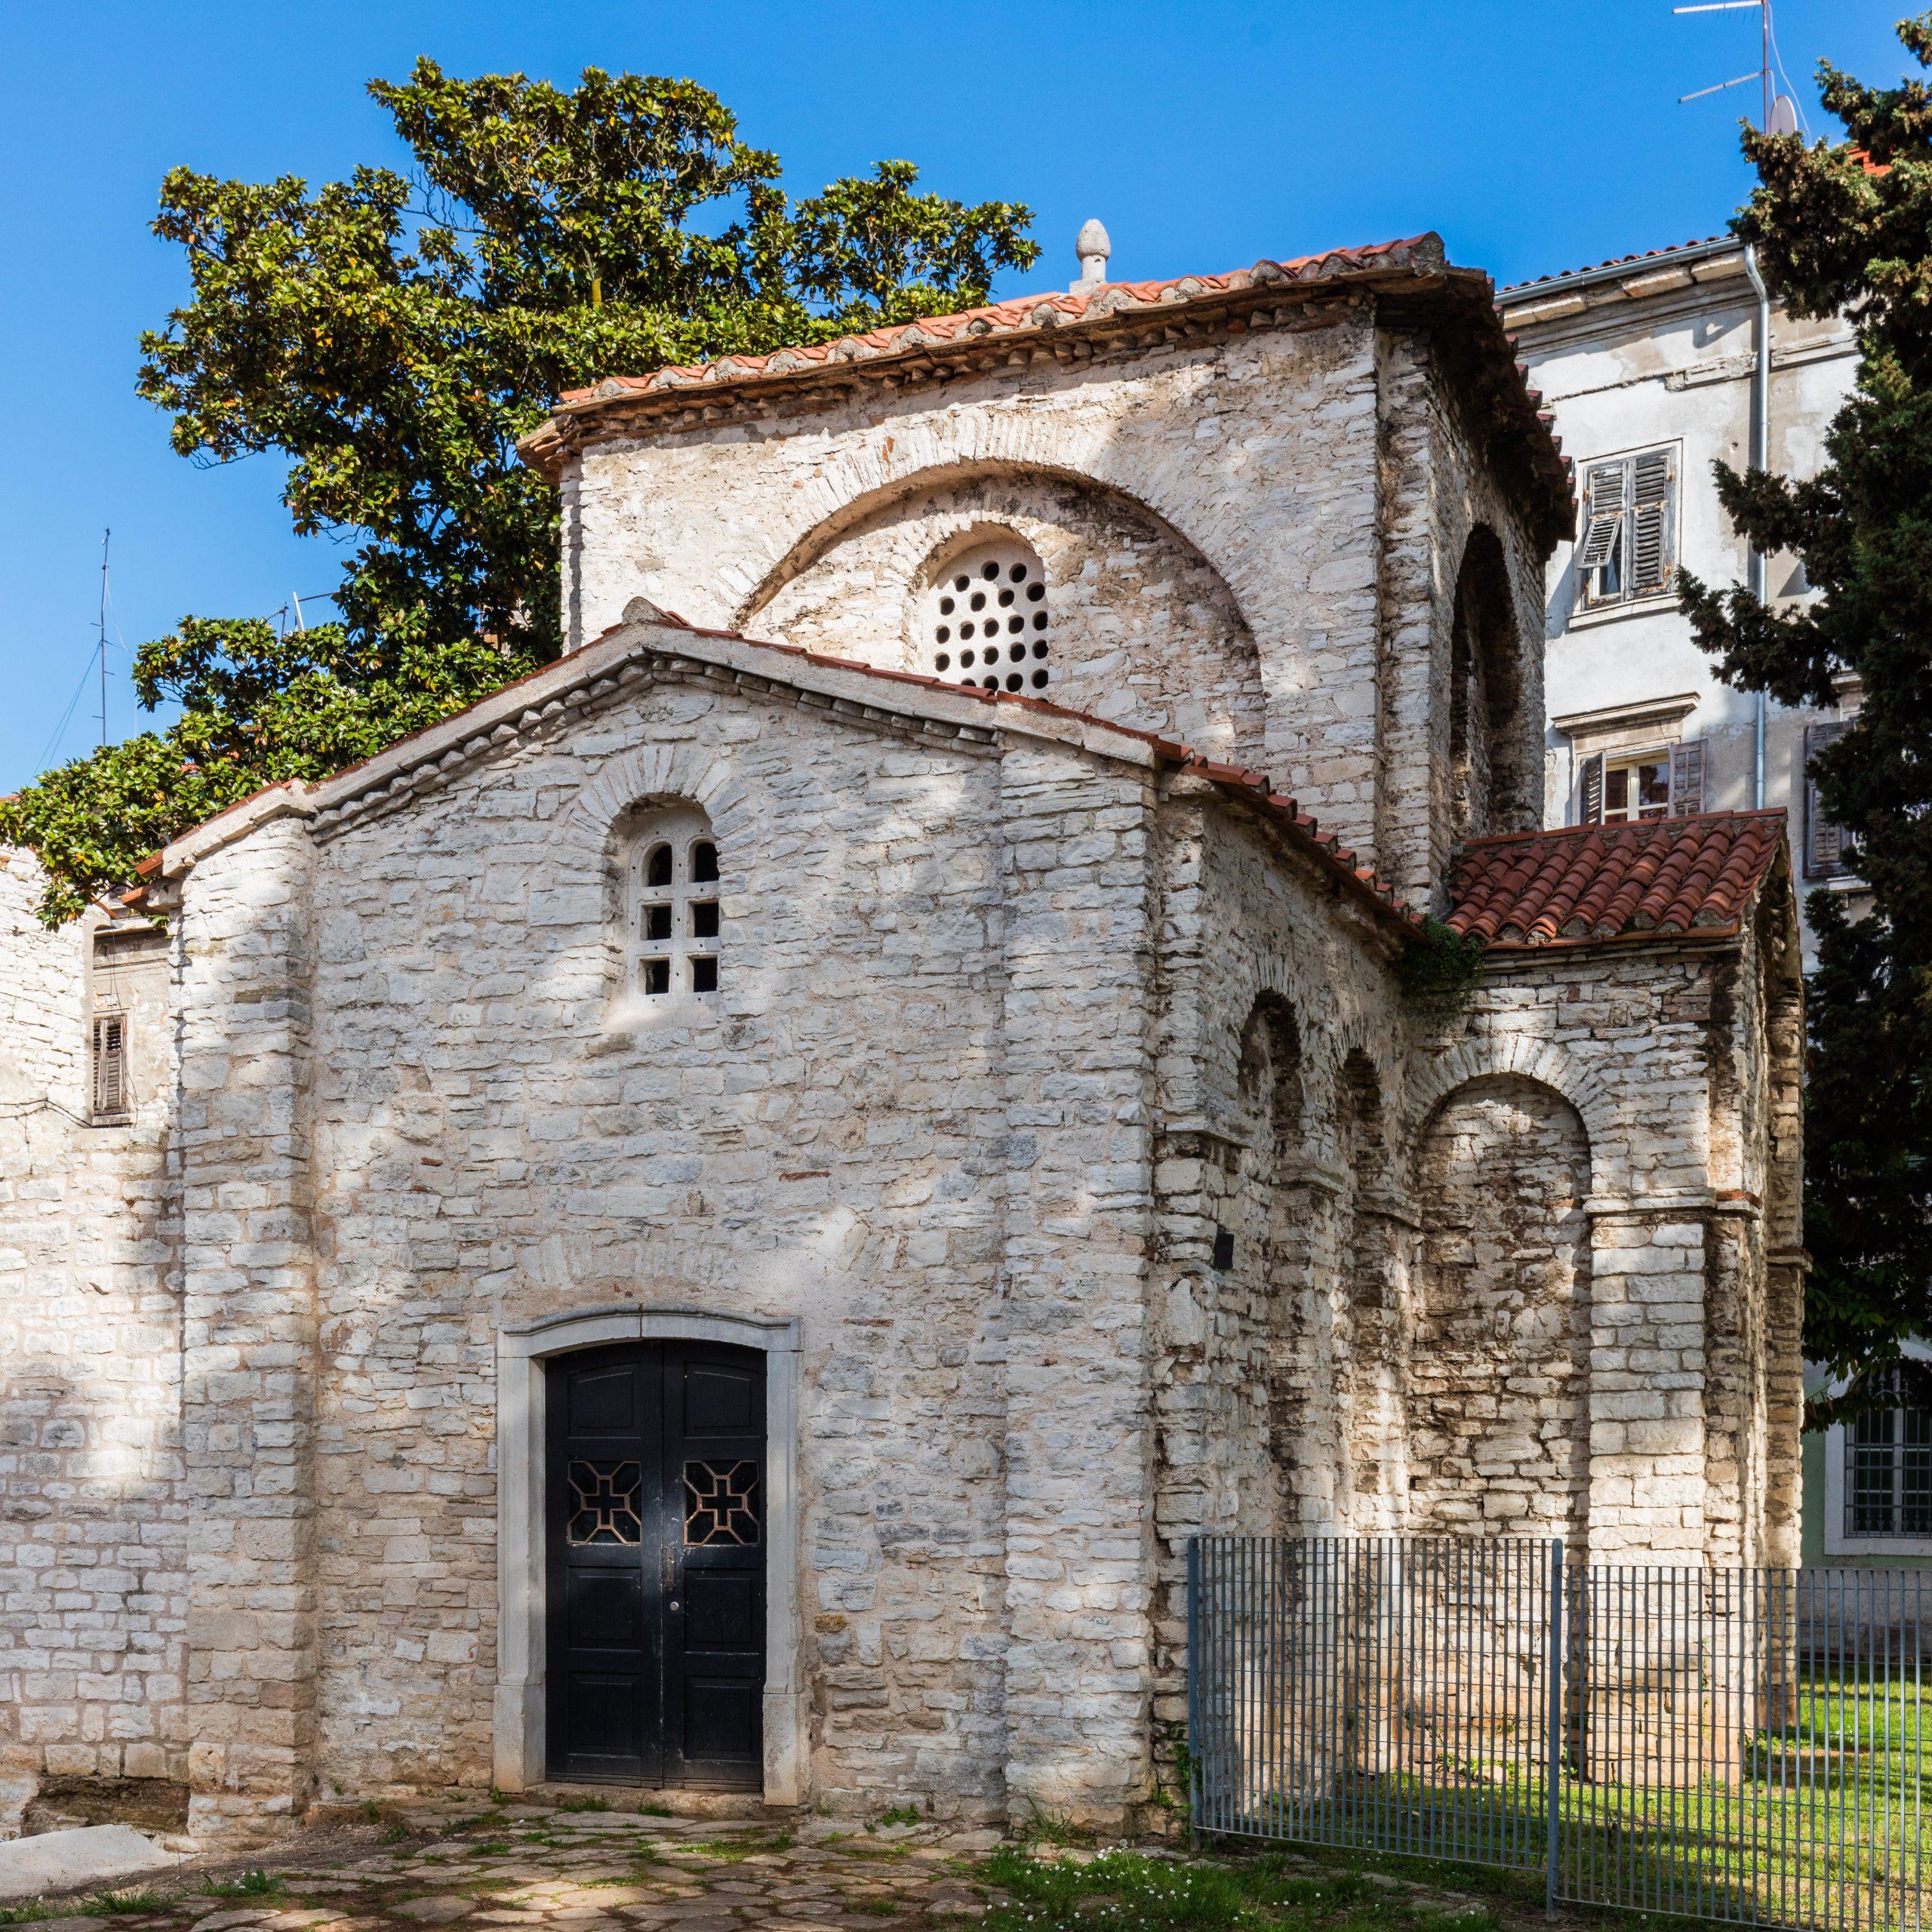  Chapel of St. Mary Formosa || Pula || Croatia